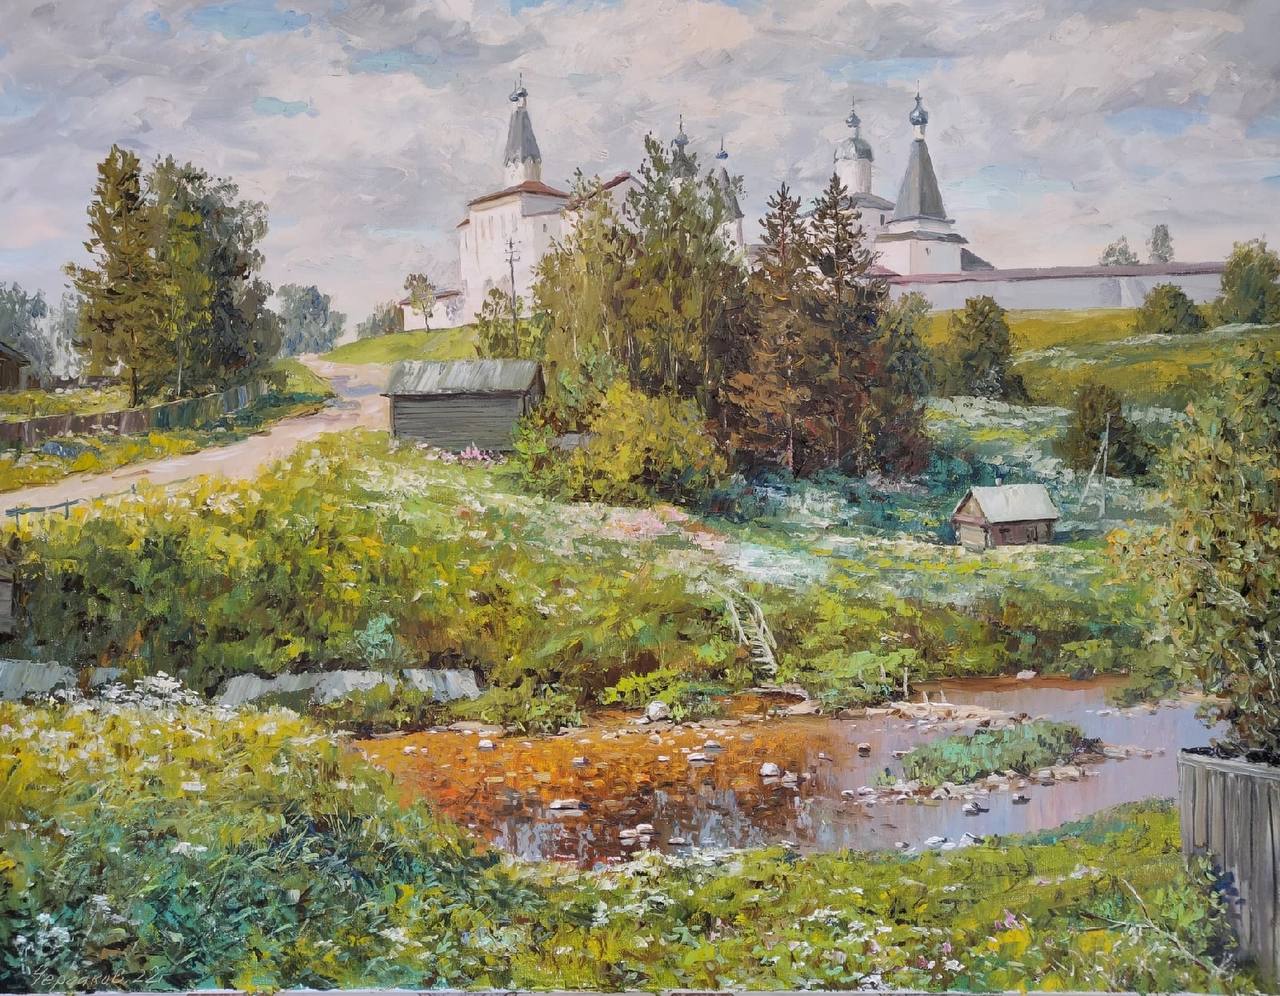 June In Ferapontovo - 1, Vyacheslav Cherdakov, Buy the painting Oil